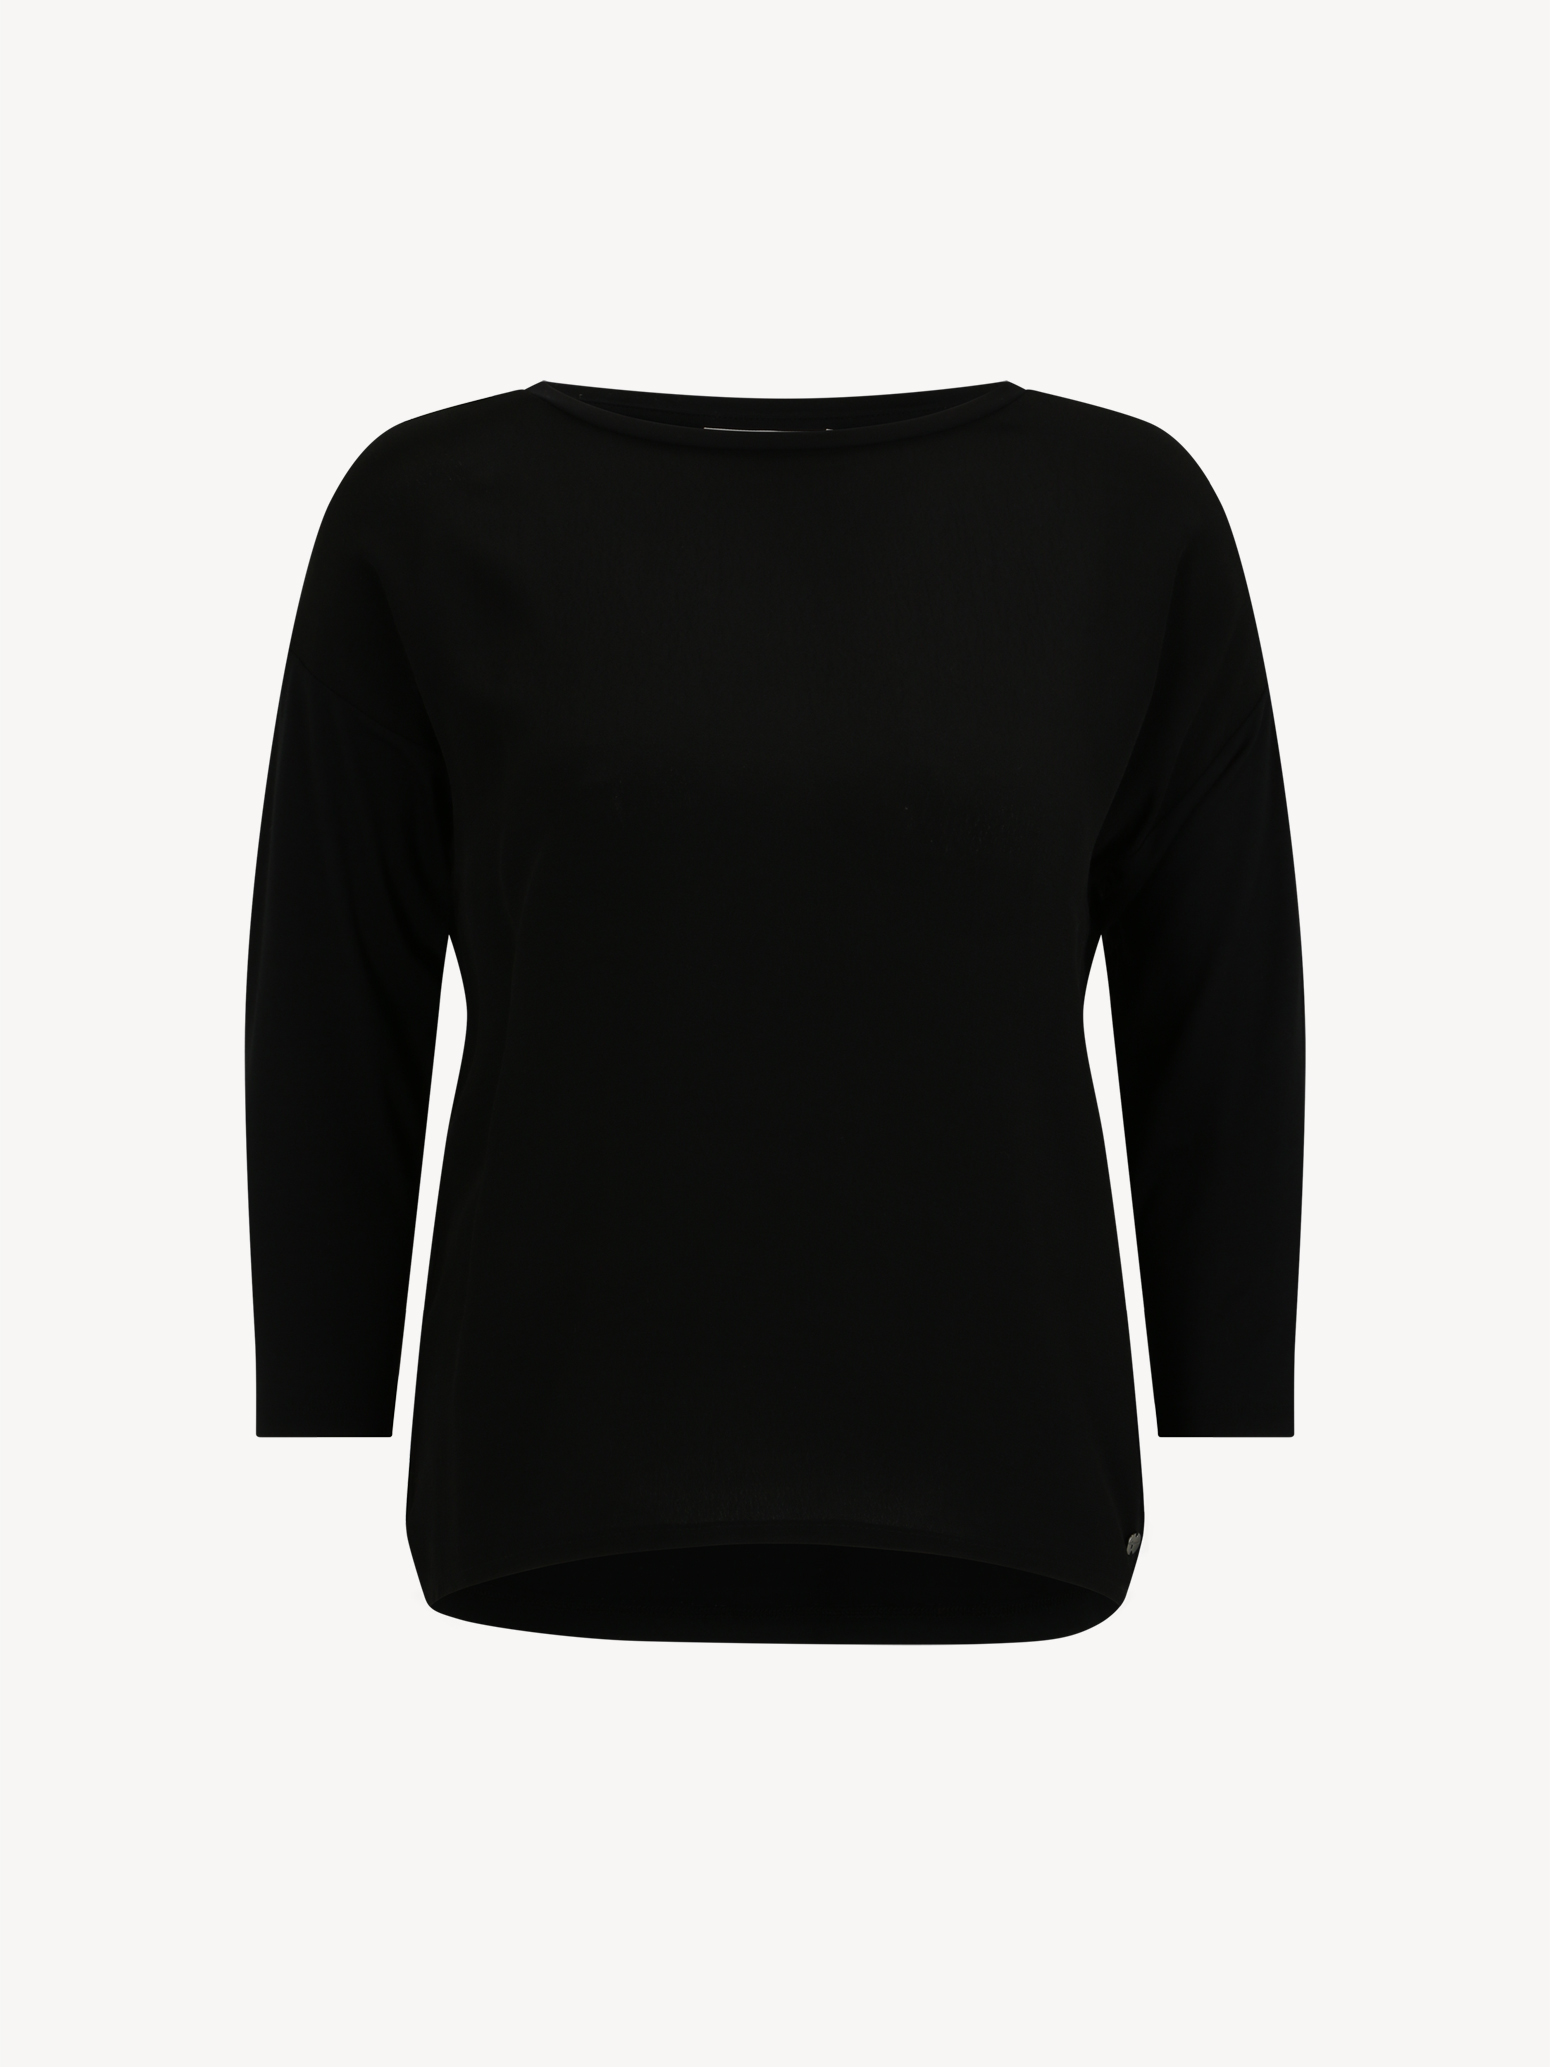 Langarmshirt - schwarz TAW0372-80009: Tamaris Shirts & Tops online kaufen!